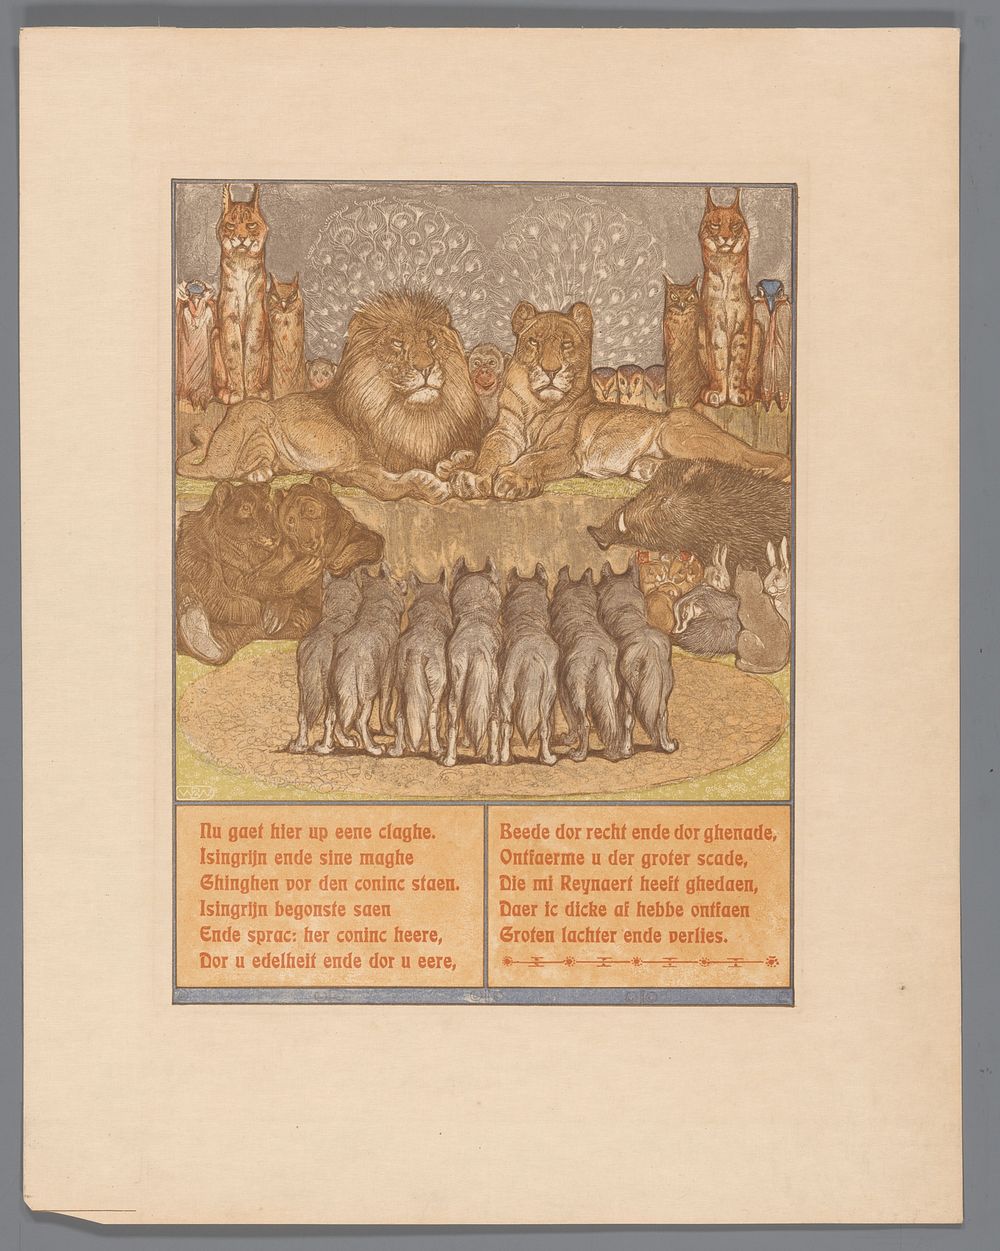 Groep wolven voor een liggende leeuw (Nobel) en leeuwin (Gentel) (1910) by Bernard Willem Wierink